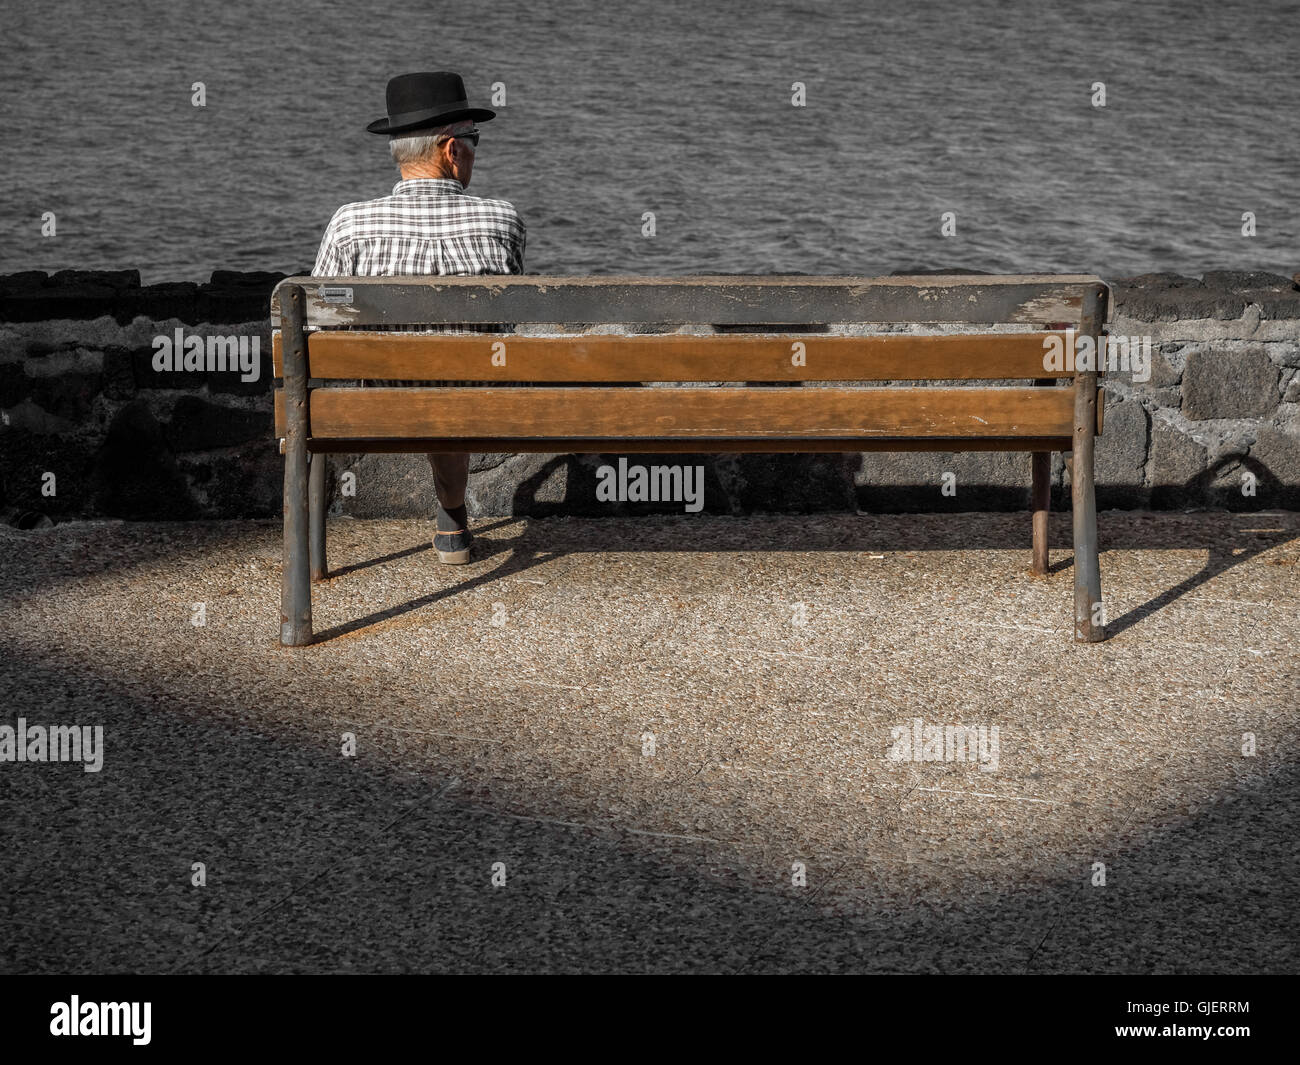 Vieux homme seul assis seul sur un banc en bois sur une promenade en bord de mer en été Banque D'Images